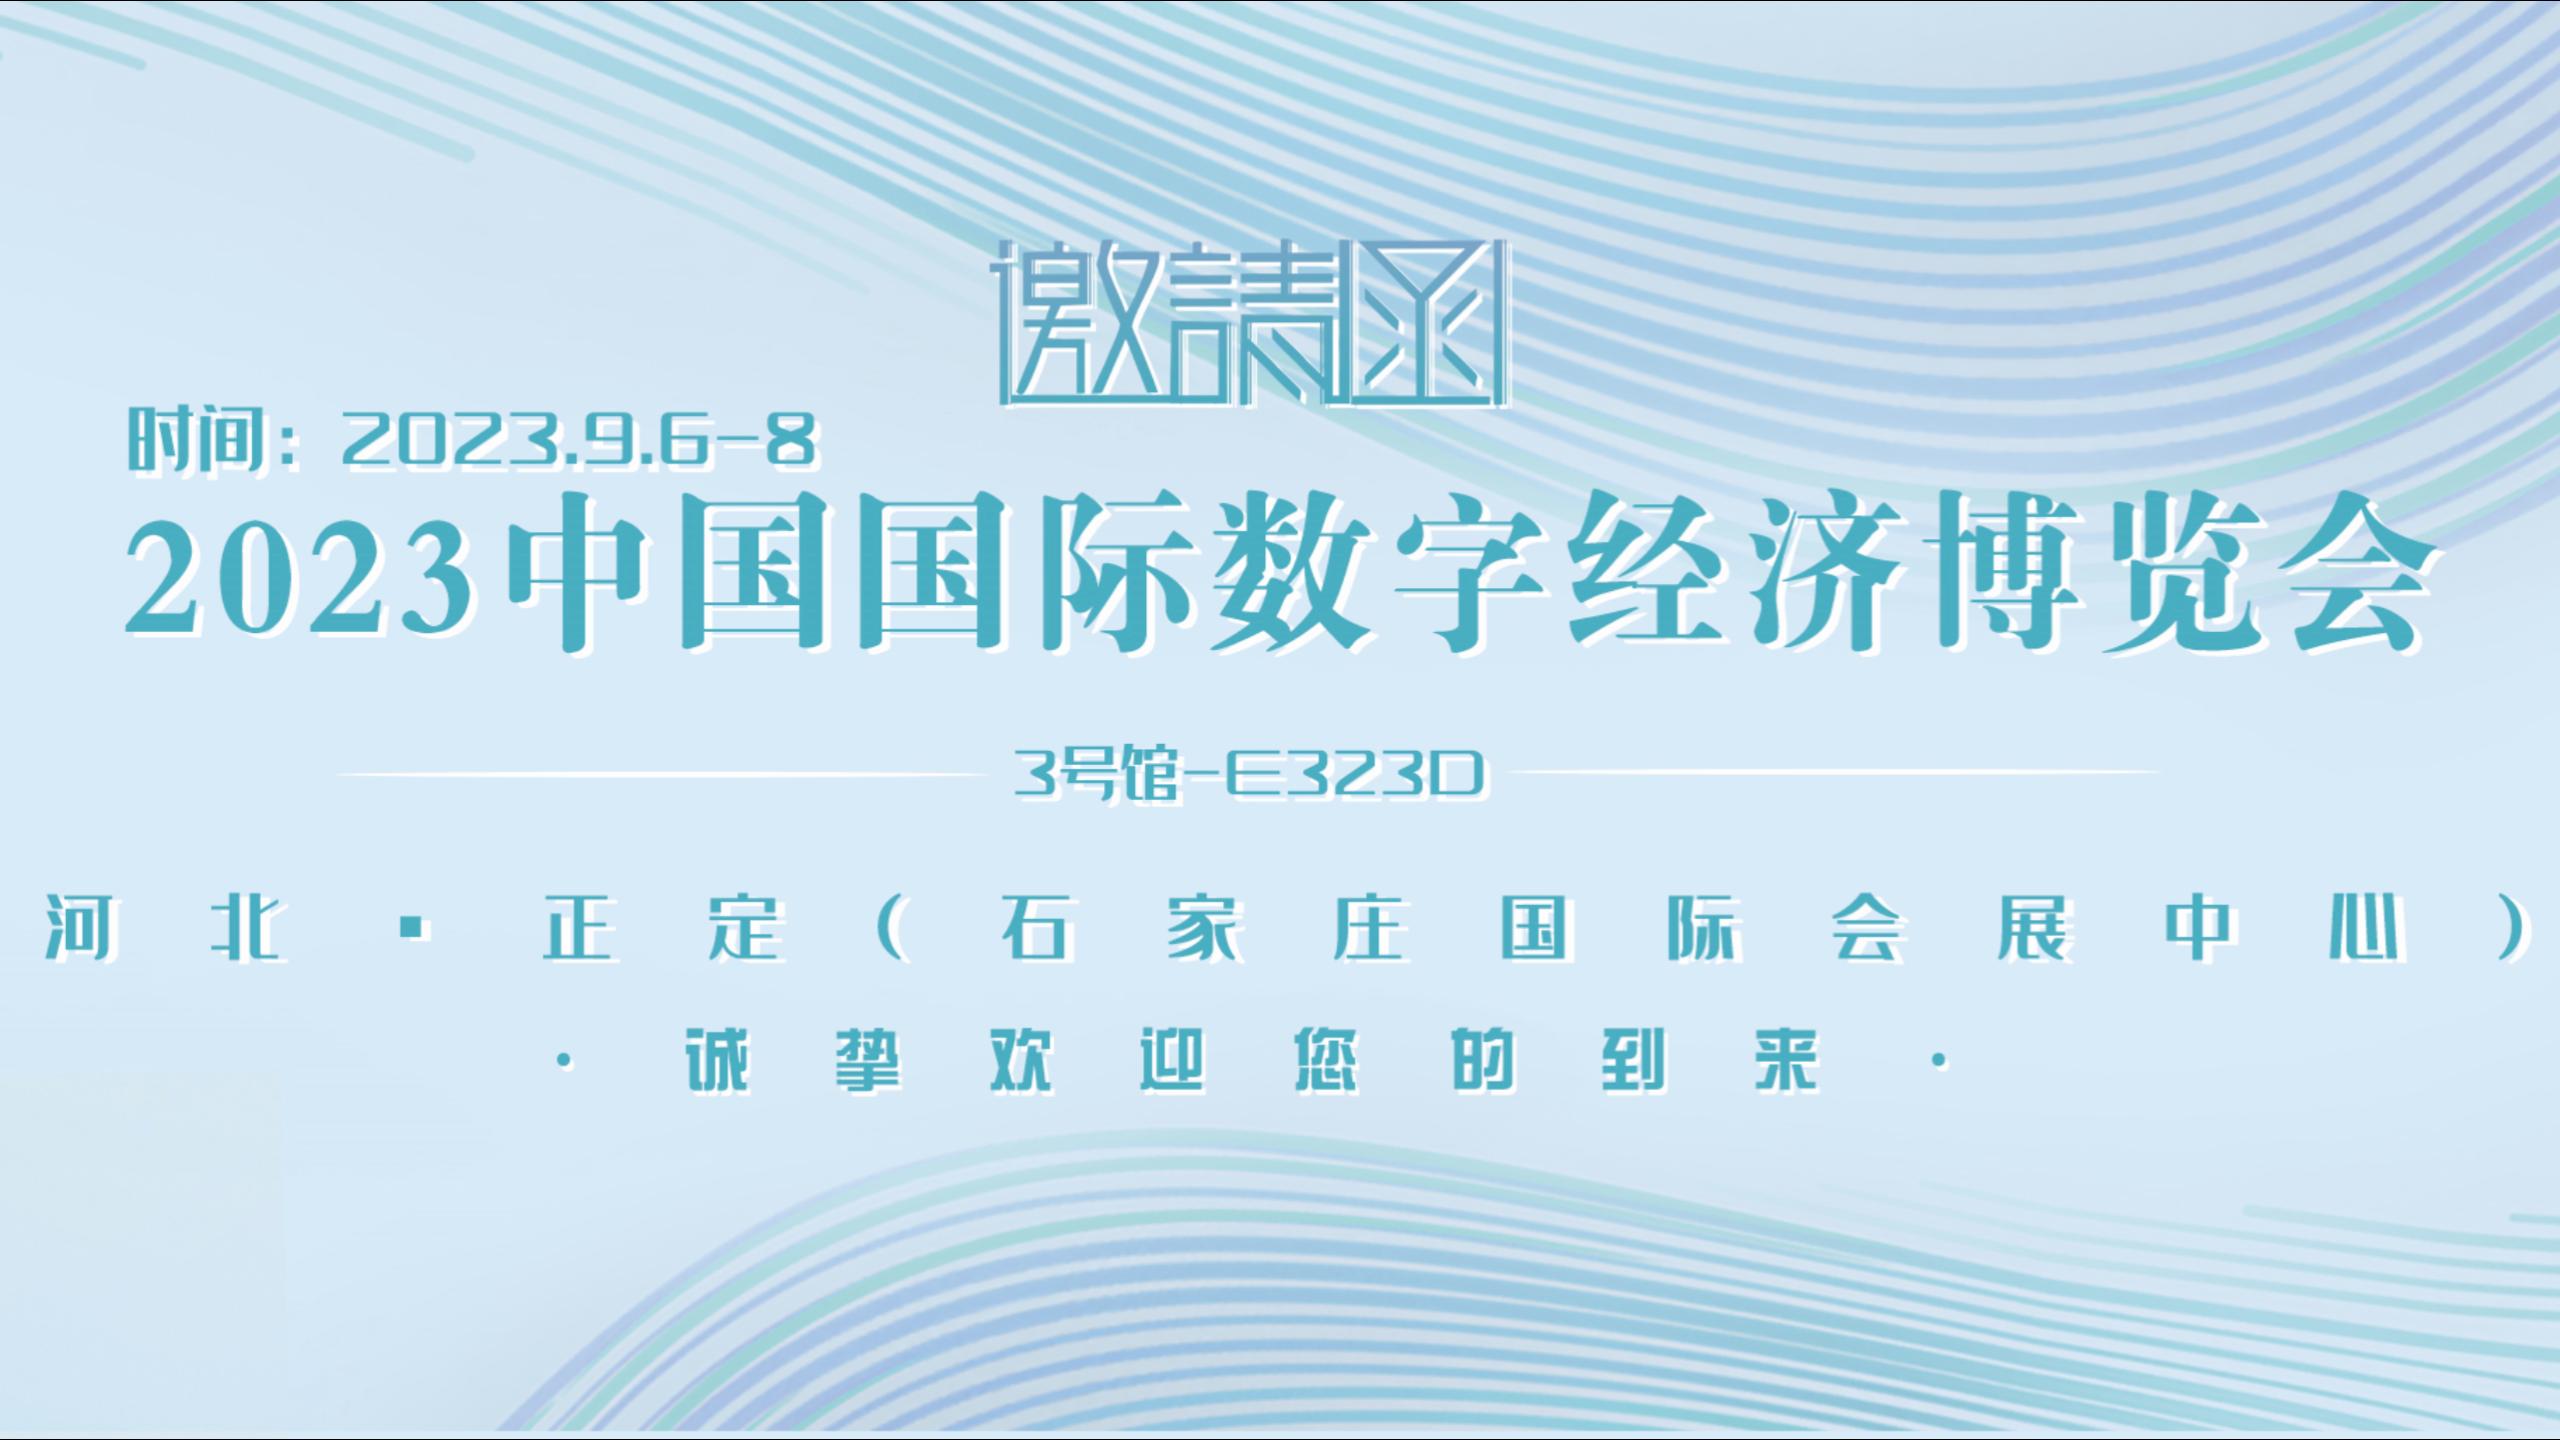 9月6-8日，东用亮相中国数博会，来展位继续领礼品啊！